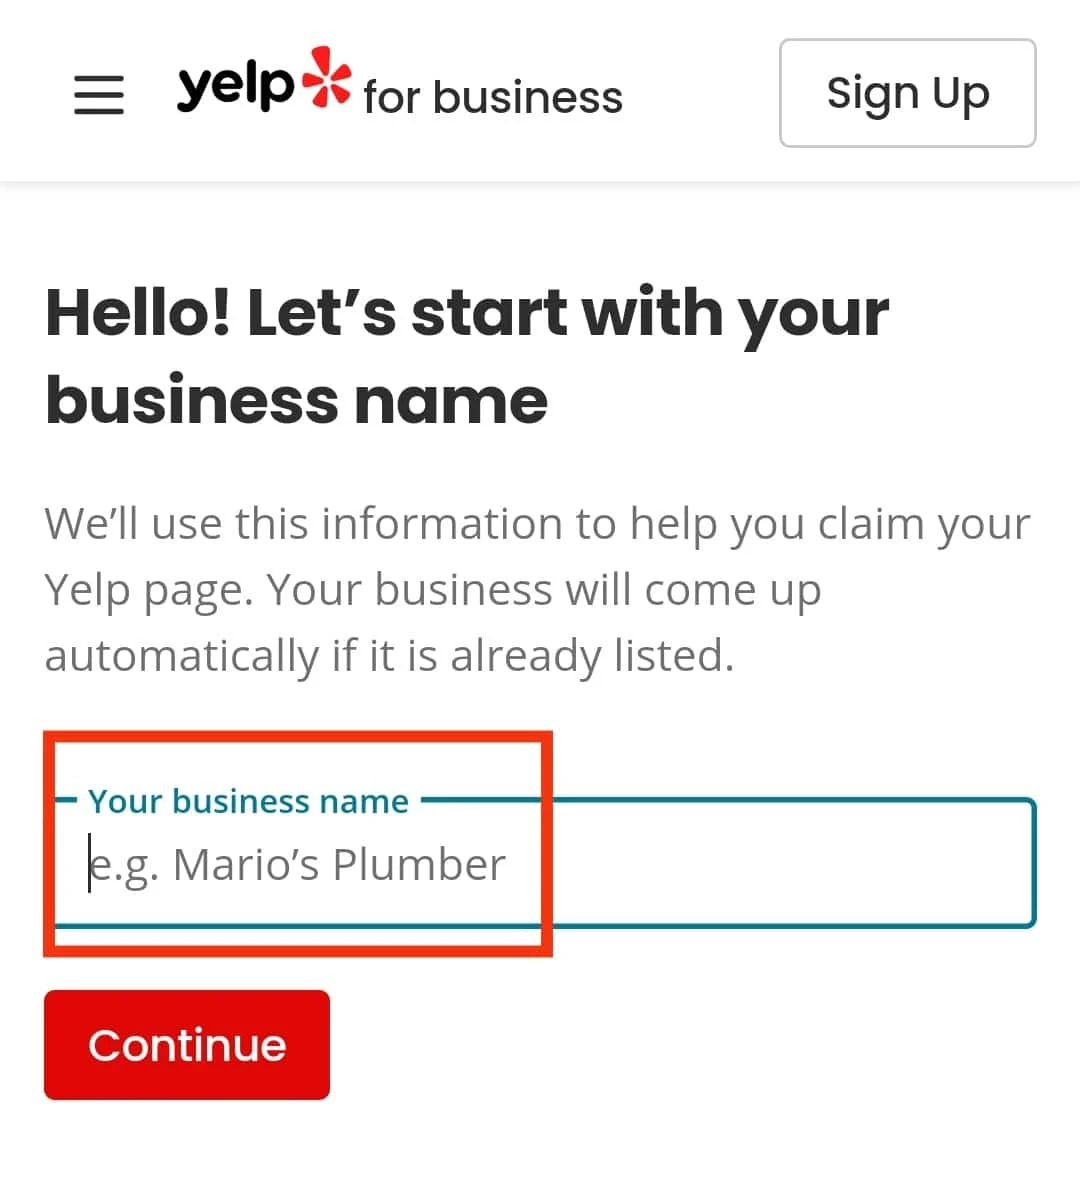 輸入您的公司名稱。